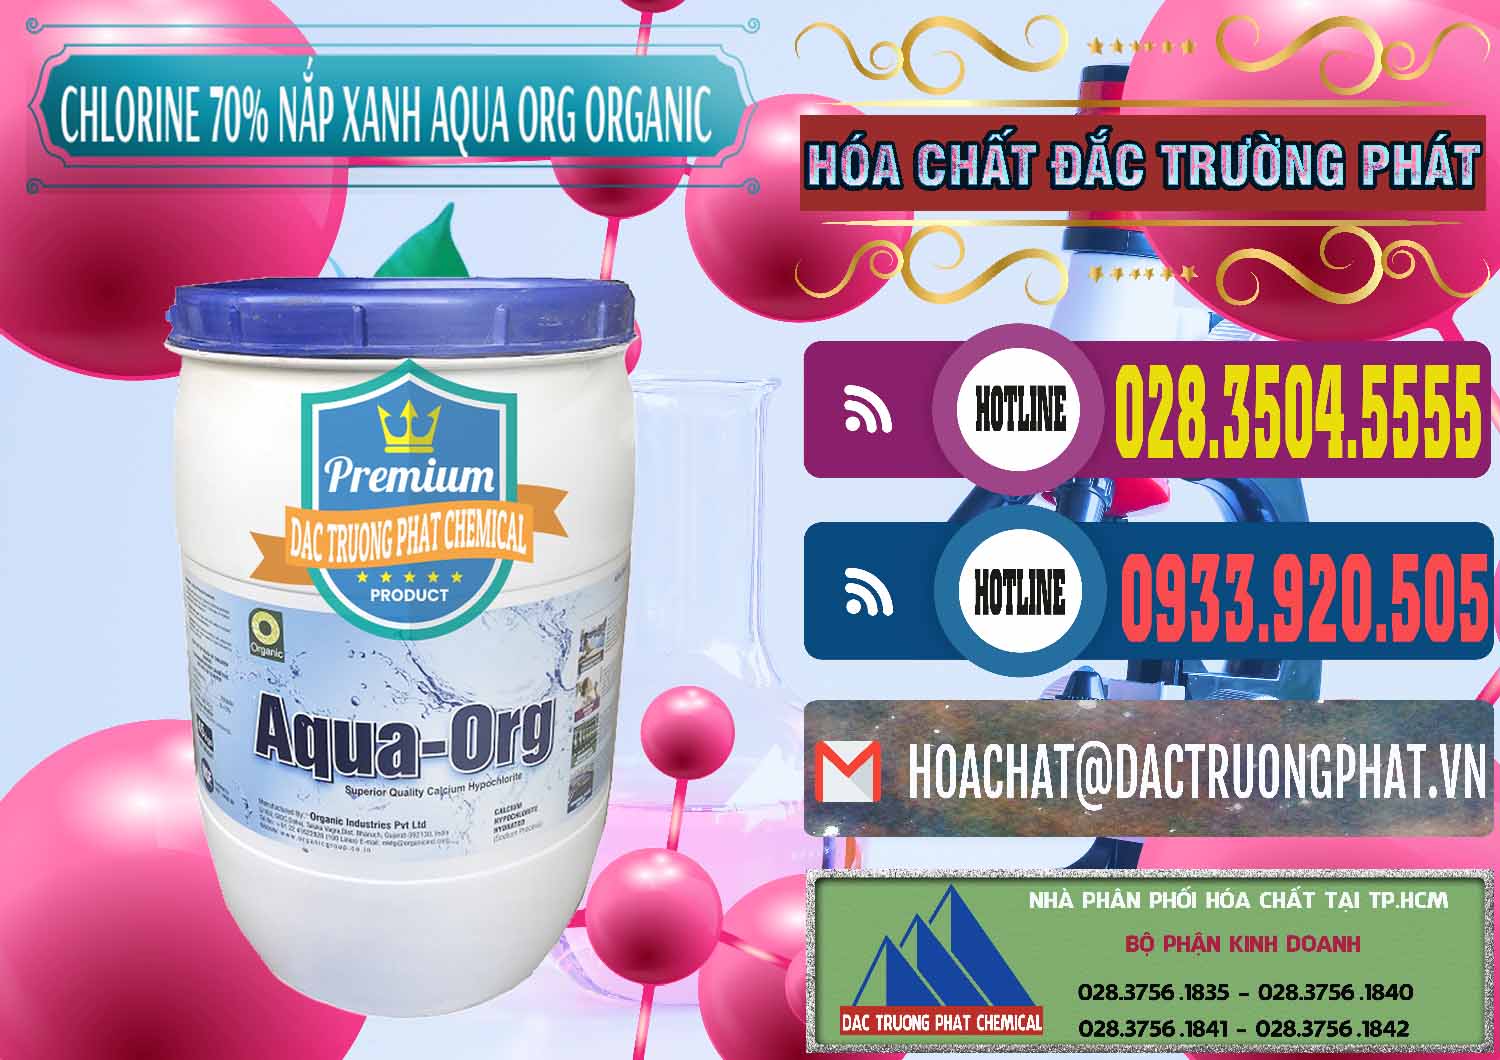 Cty kinh doanh _ bán Chlorine – Clorin 70% Thùng Tròn Nắp Xanh Aqua ORG Organic Ấn Độ India - 0247 - Nơi phân phối ( nhập khẩu ) hóa chất tại TP.HCM - muabanhoachat.com.vn